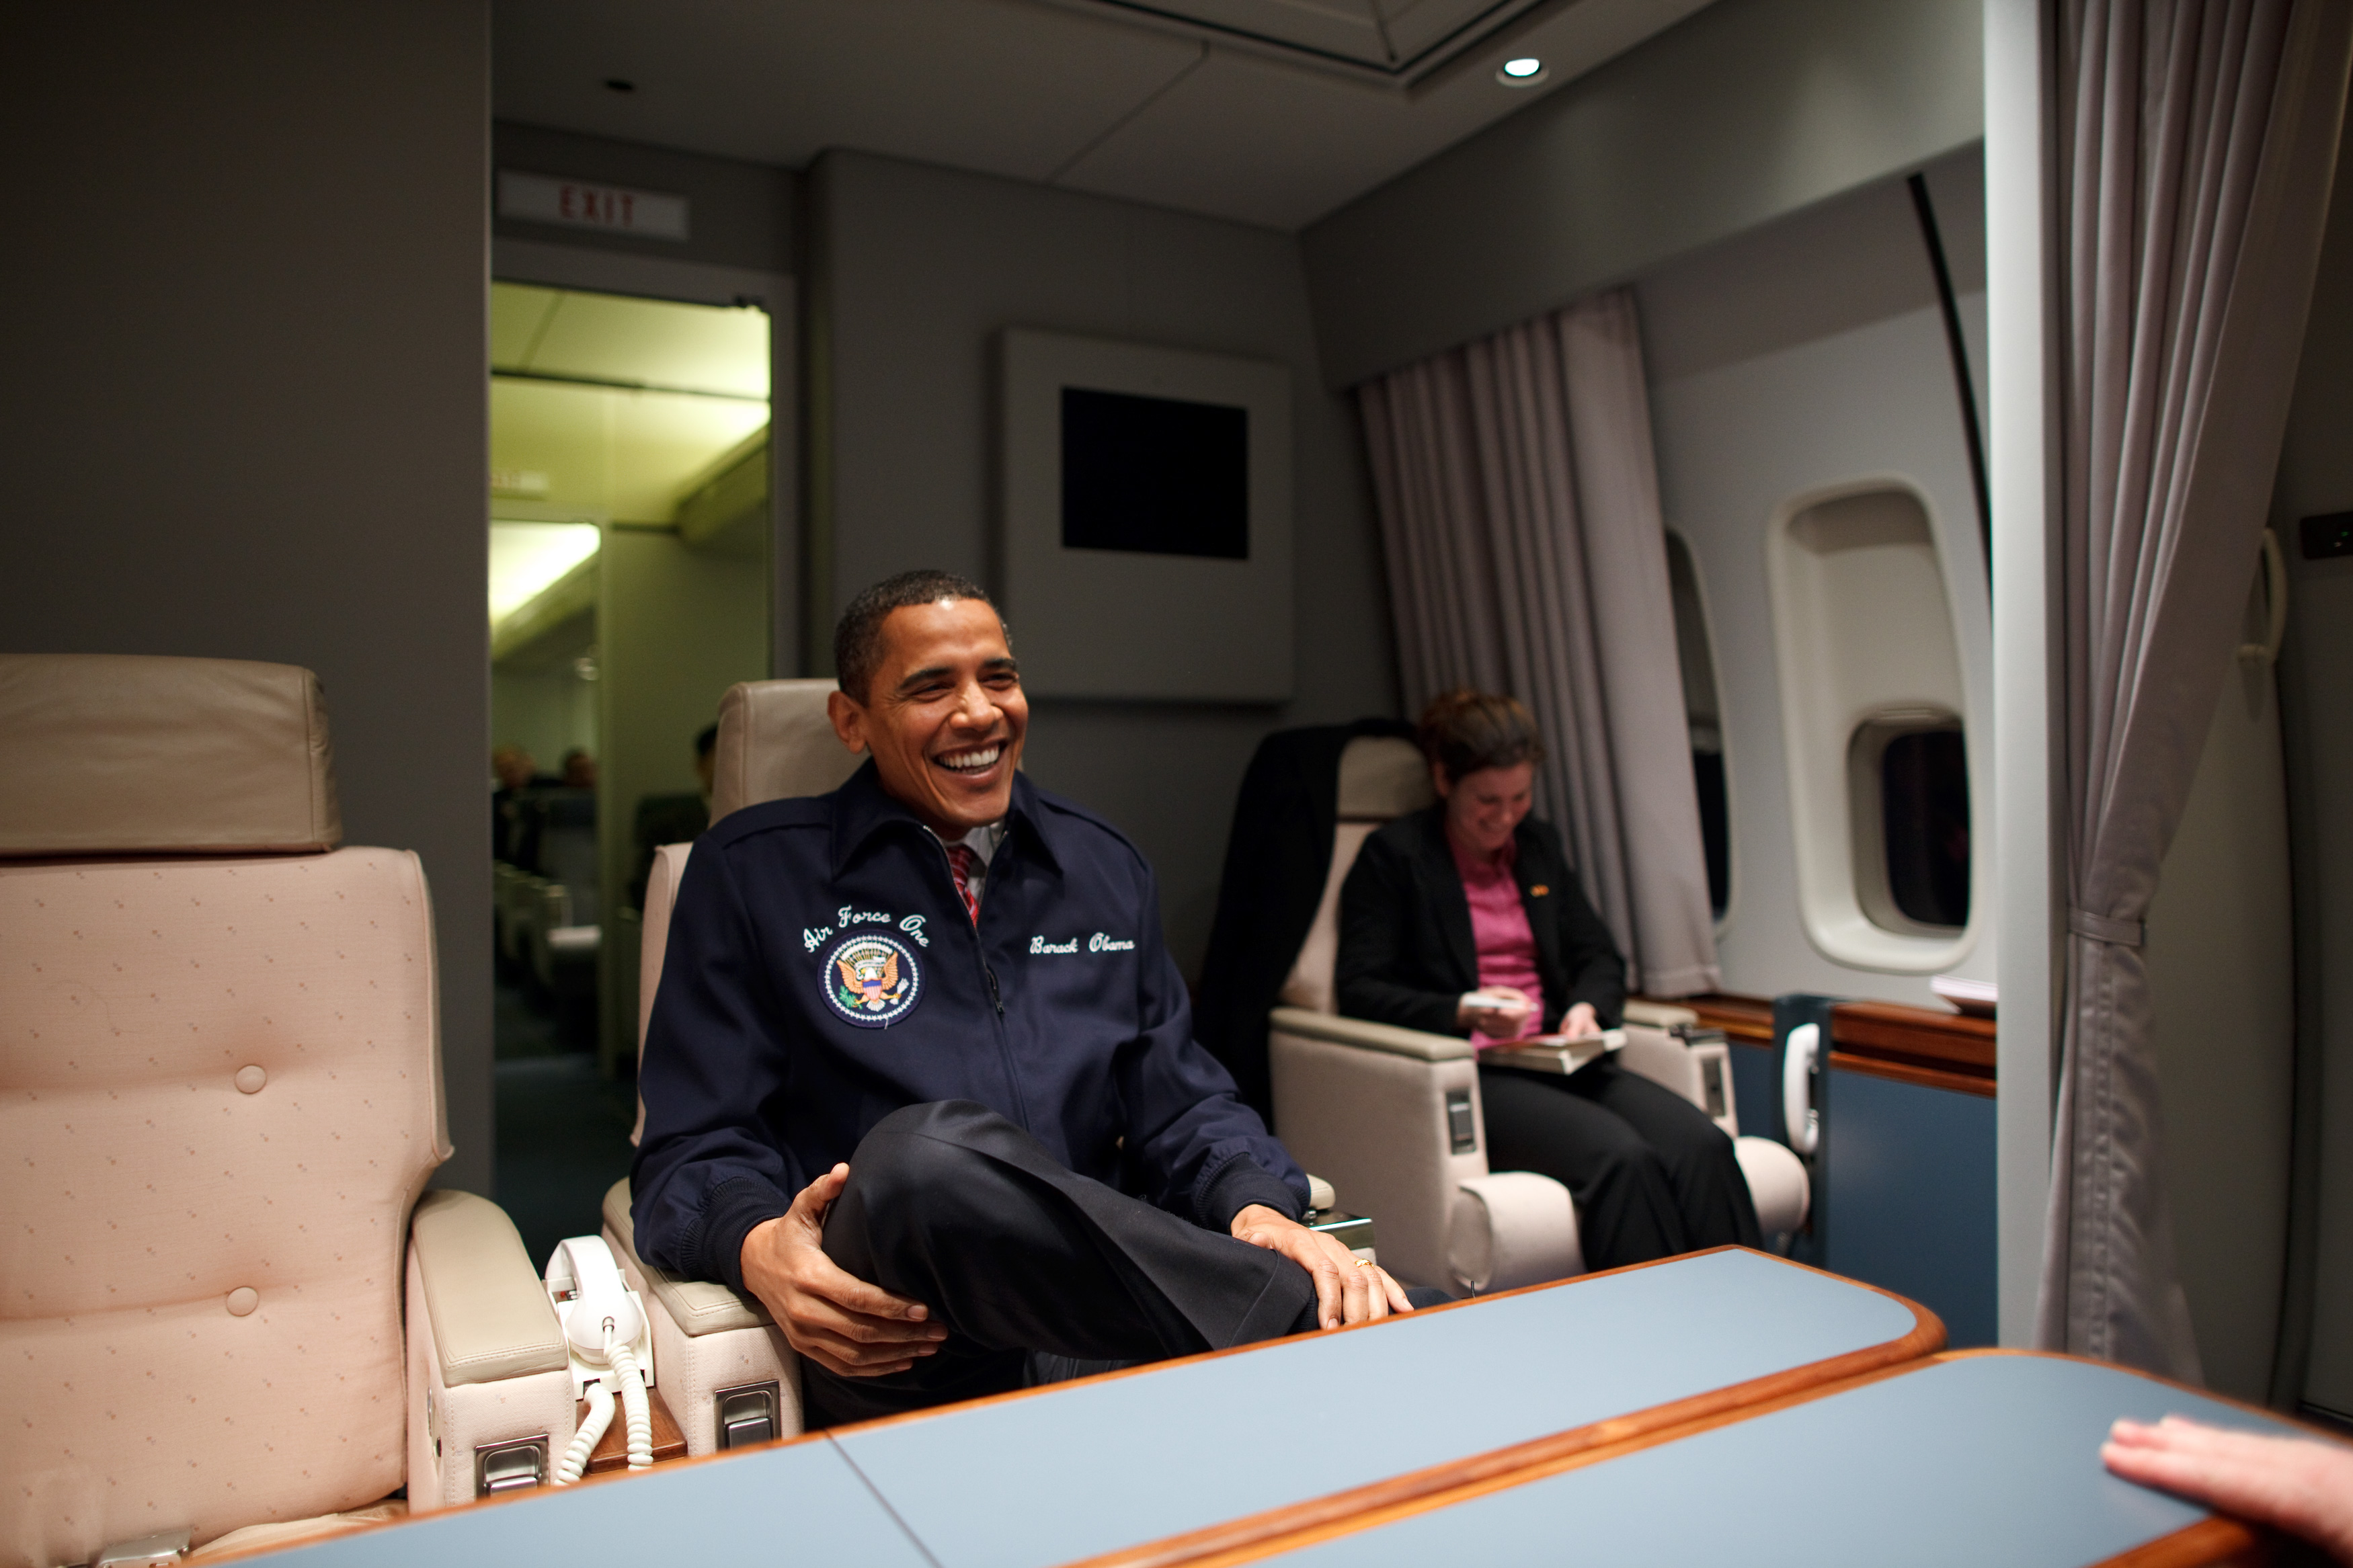 โอบามาขณะโดยสารเครื่องบินประจำตำแหน่ง 'แอร์ฟอร์ซวัน' เป็นครั้งแรก / Official White House Photo by Pete Souza